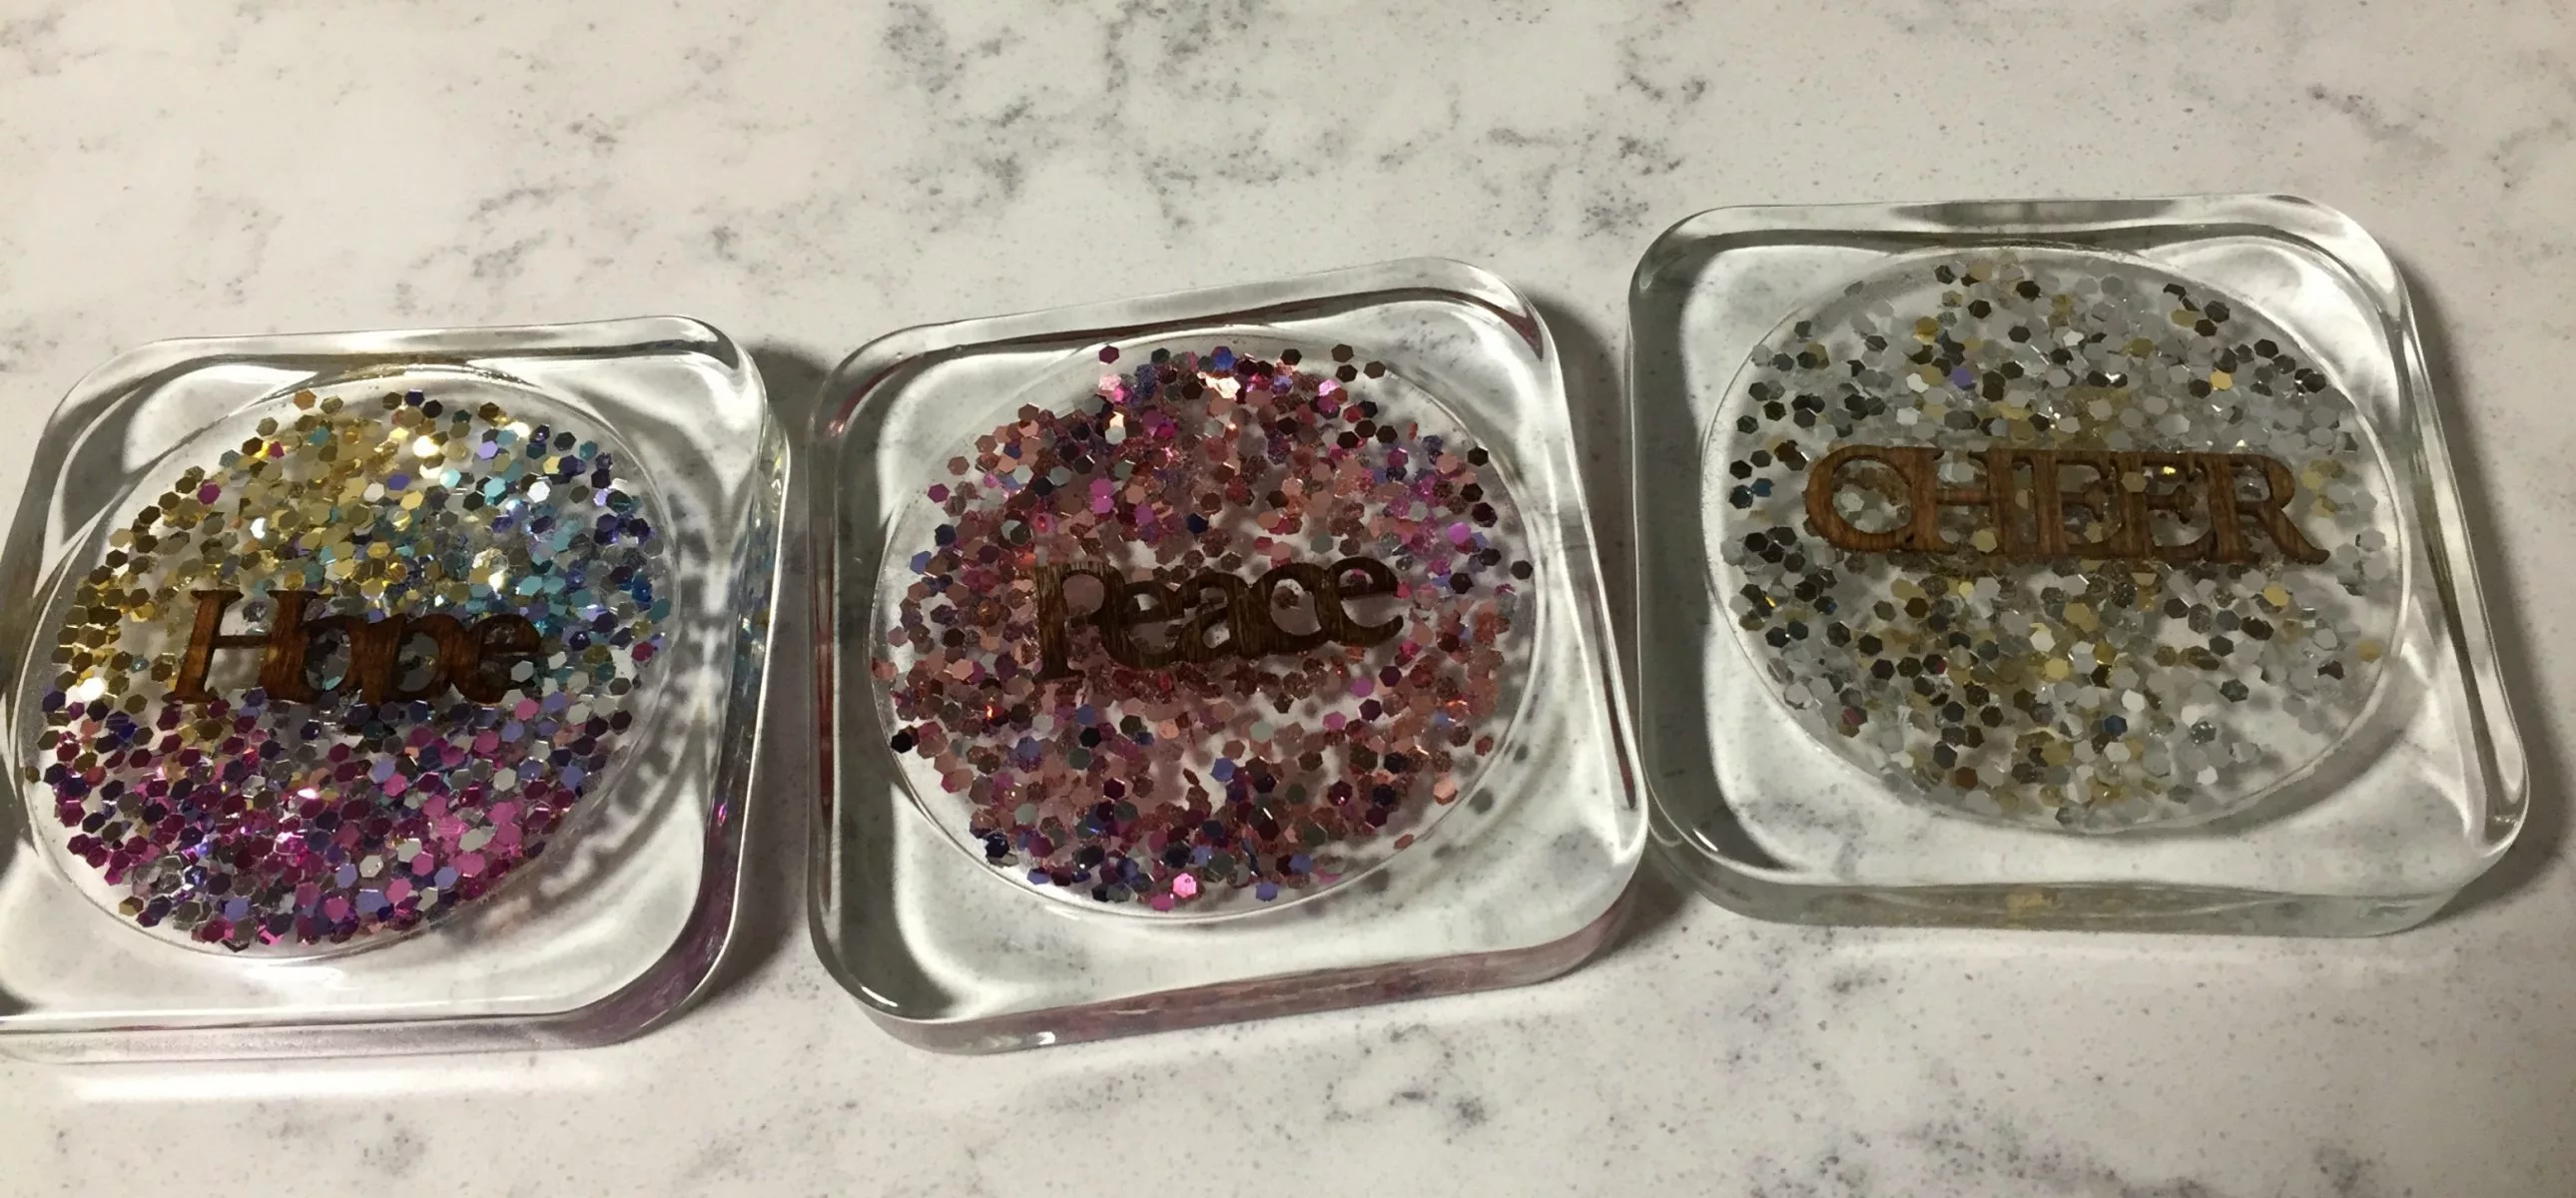 DIY sparkly resin coasters